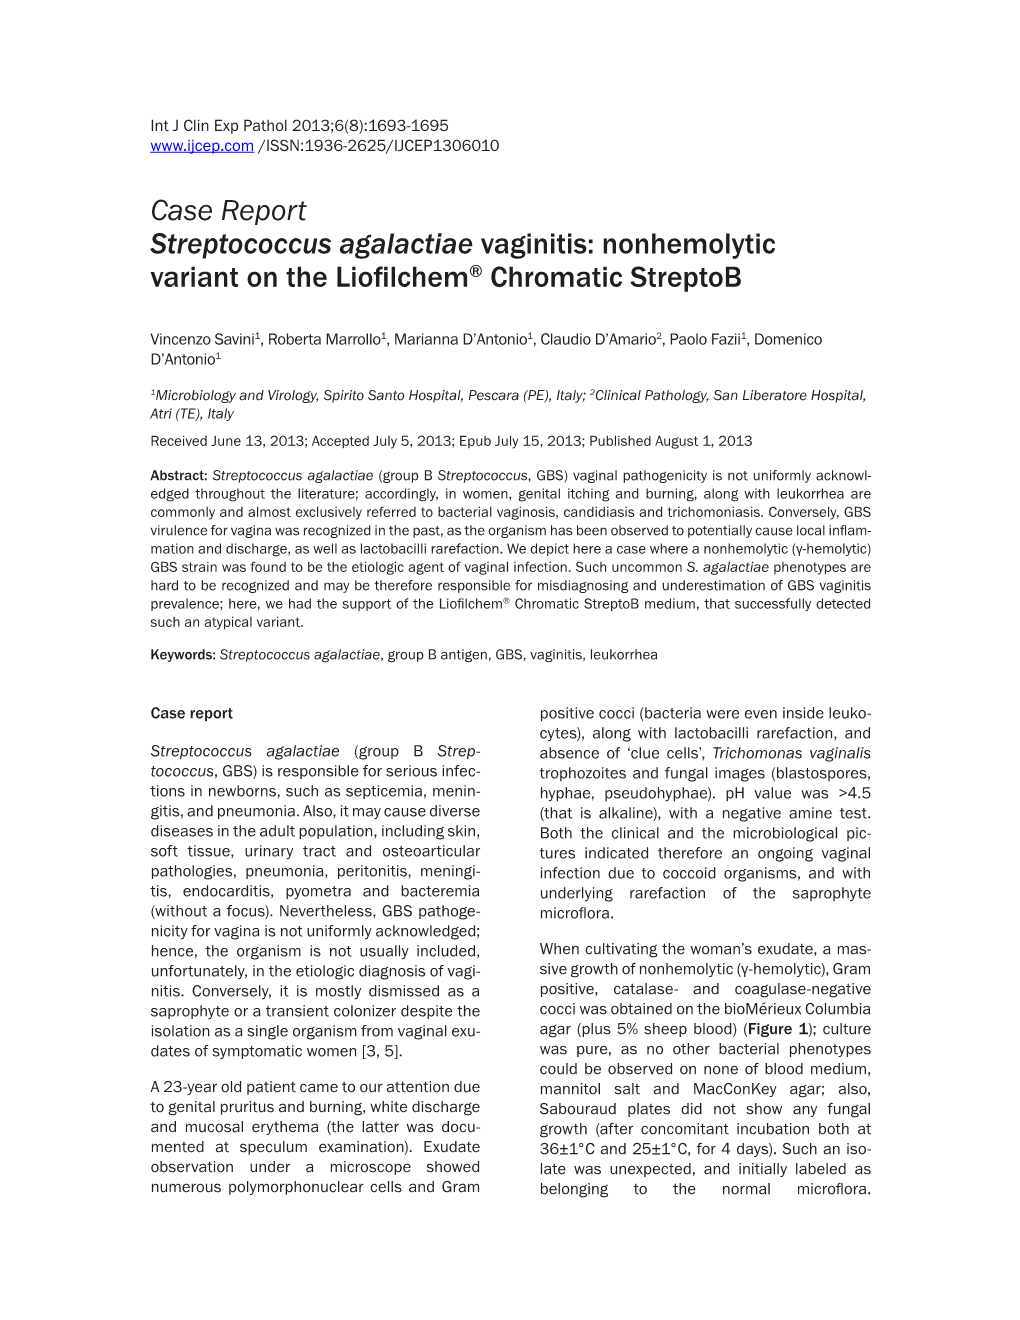 Case Report Streptococcus Agalactiae Vaginitis: Nonhemolytic Variant on the Liofilchem® Chromatic Streptob